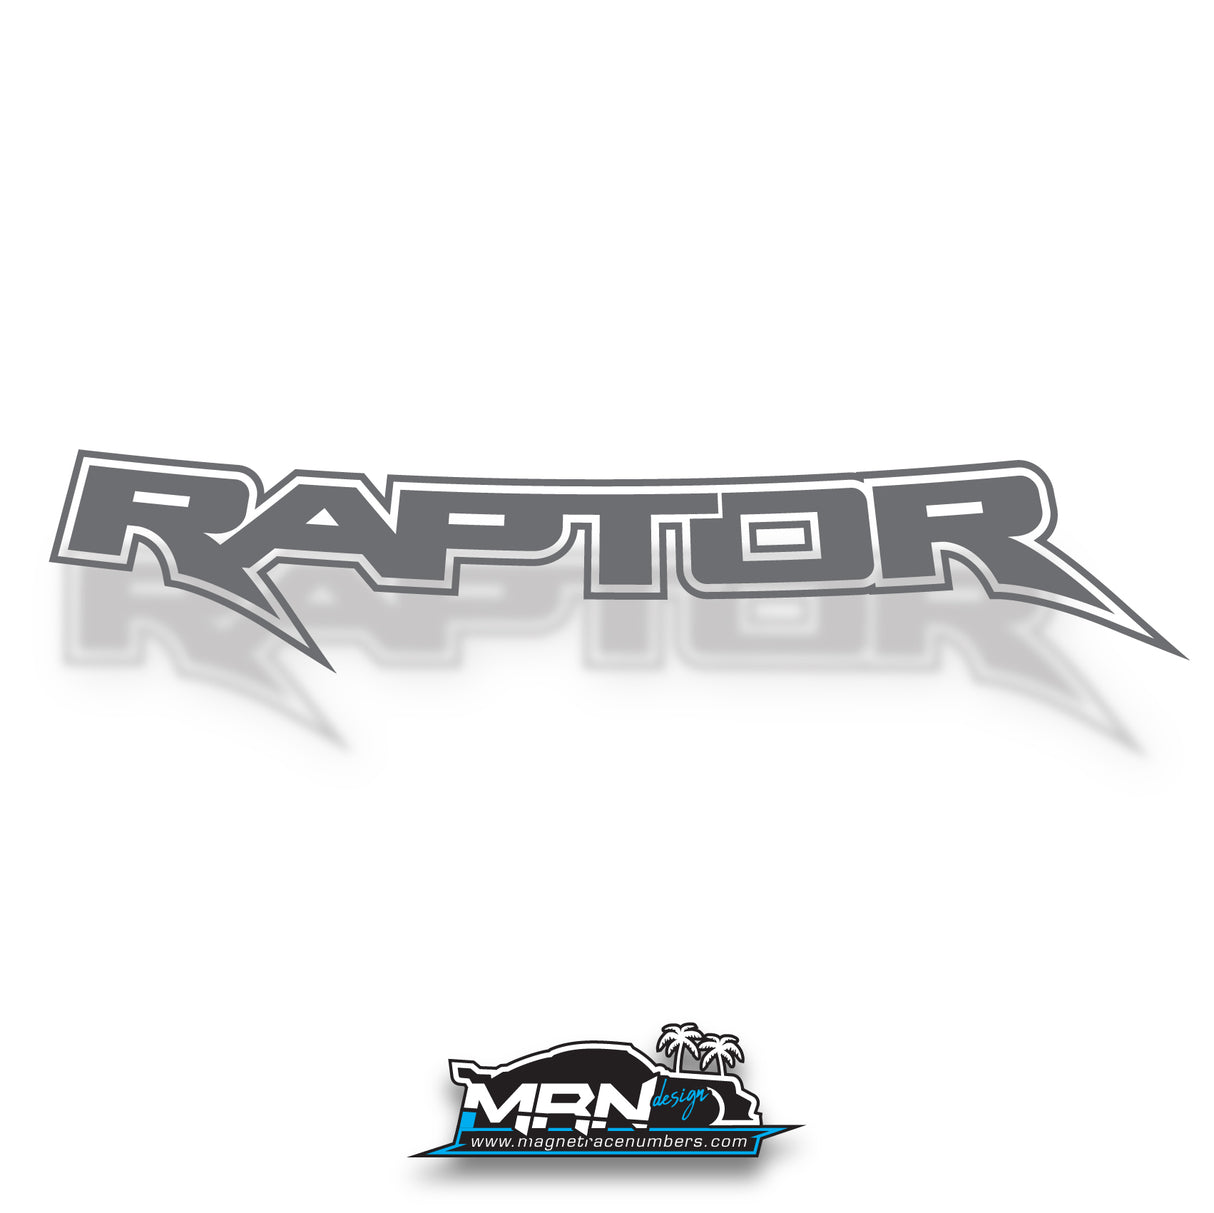 Ford Ranger "Raptor" PX3 / Next Gen - Rear Tub Decals